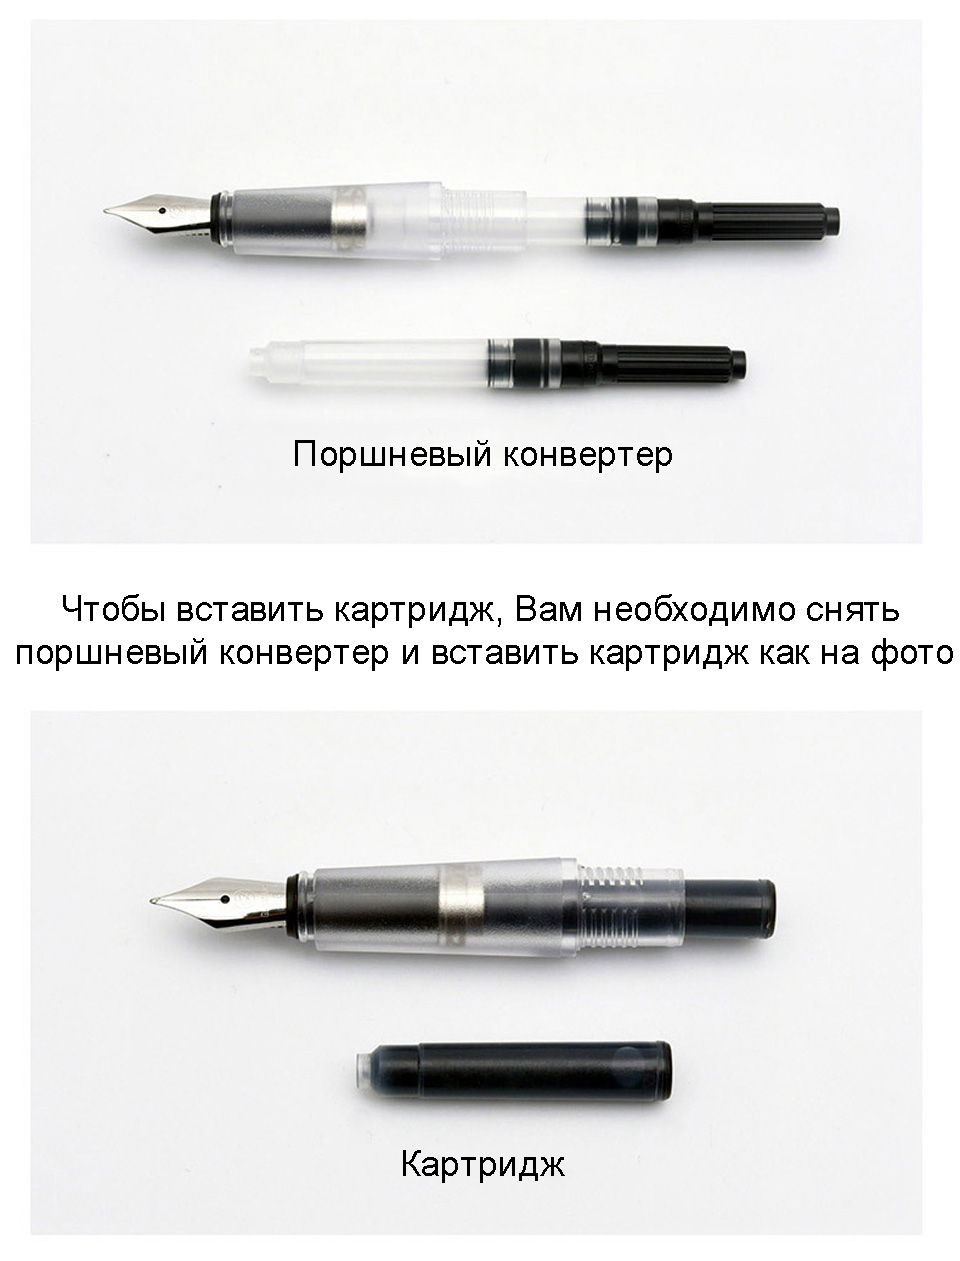 Перьевая ручка SKY Premium Plastic Fountain Pen заправка чернилами